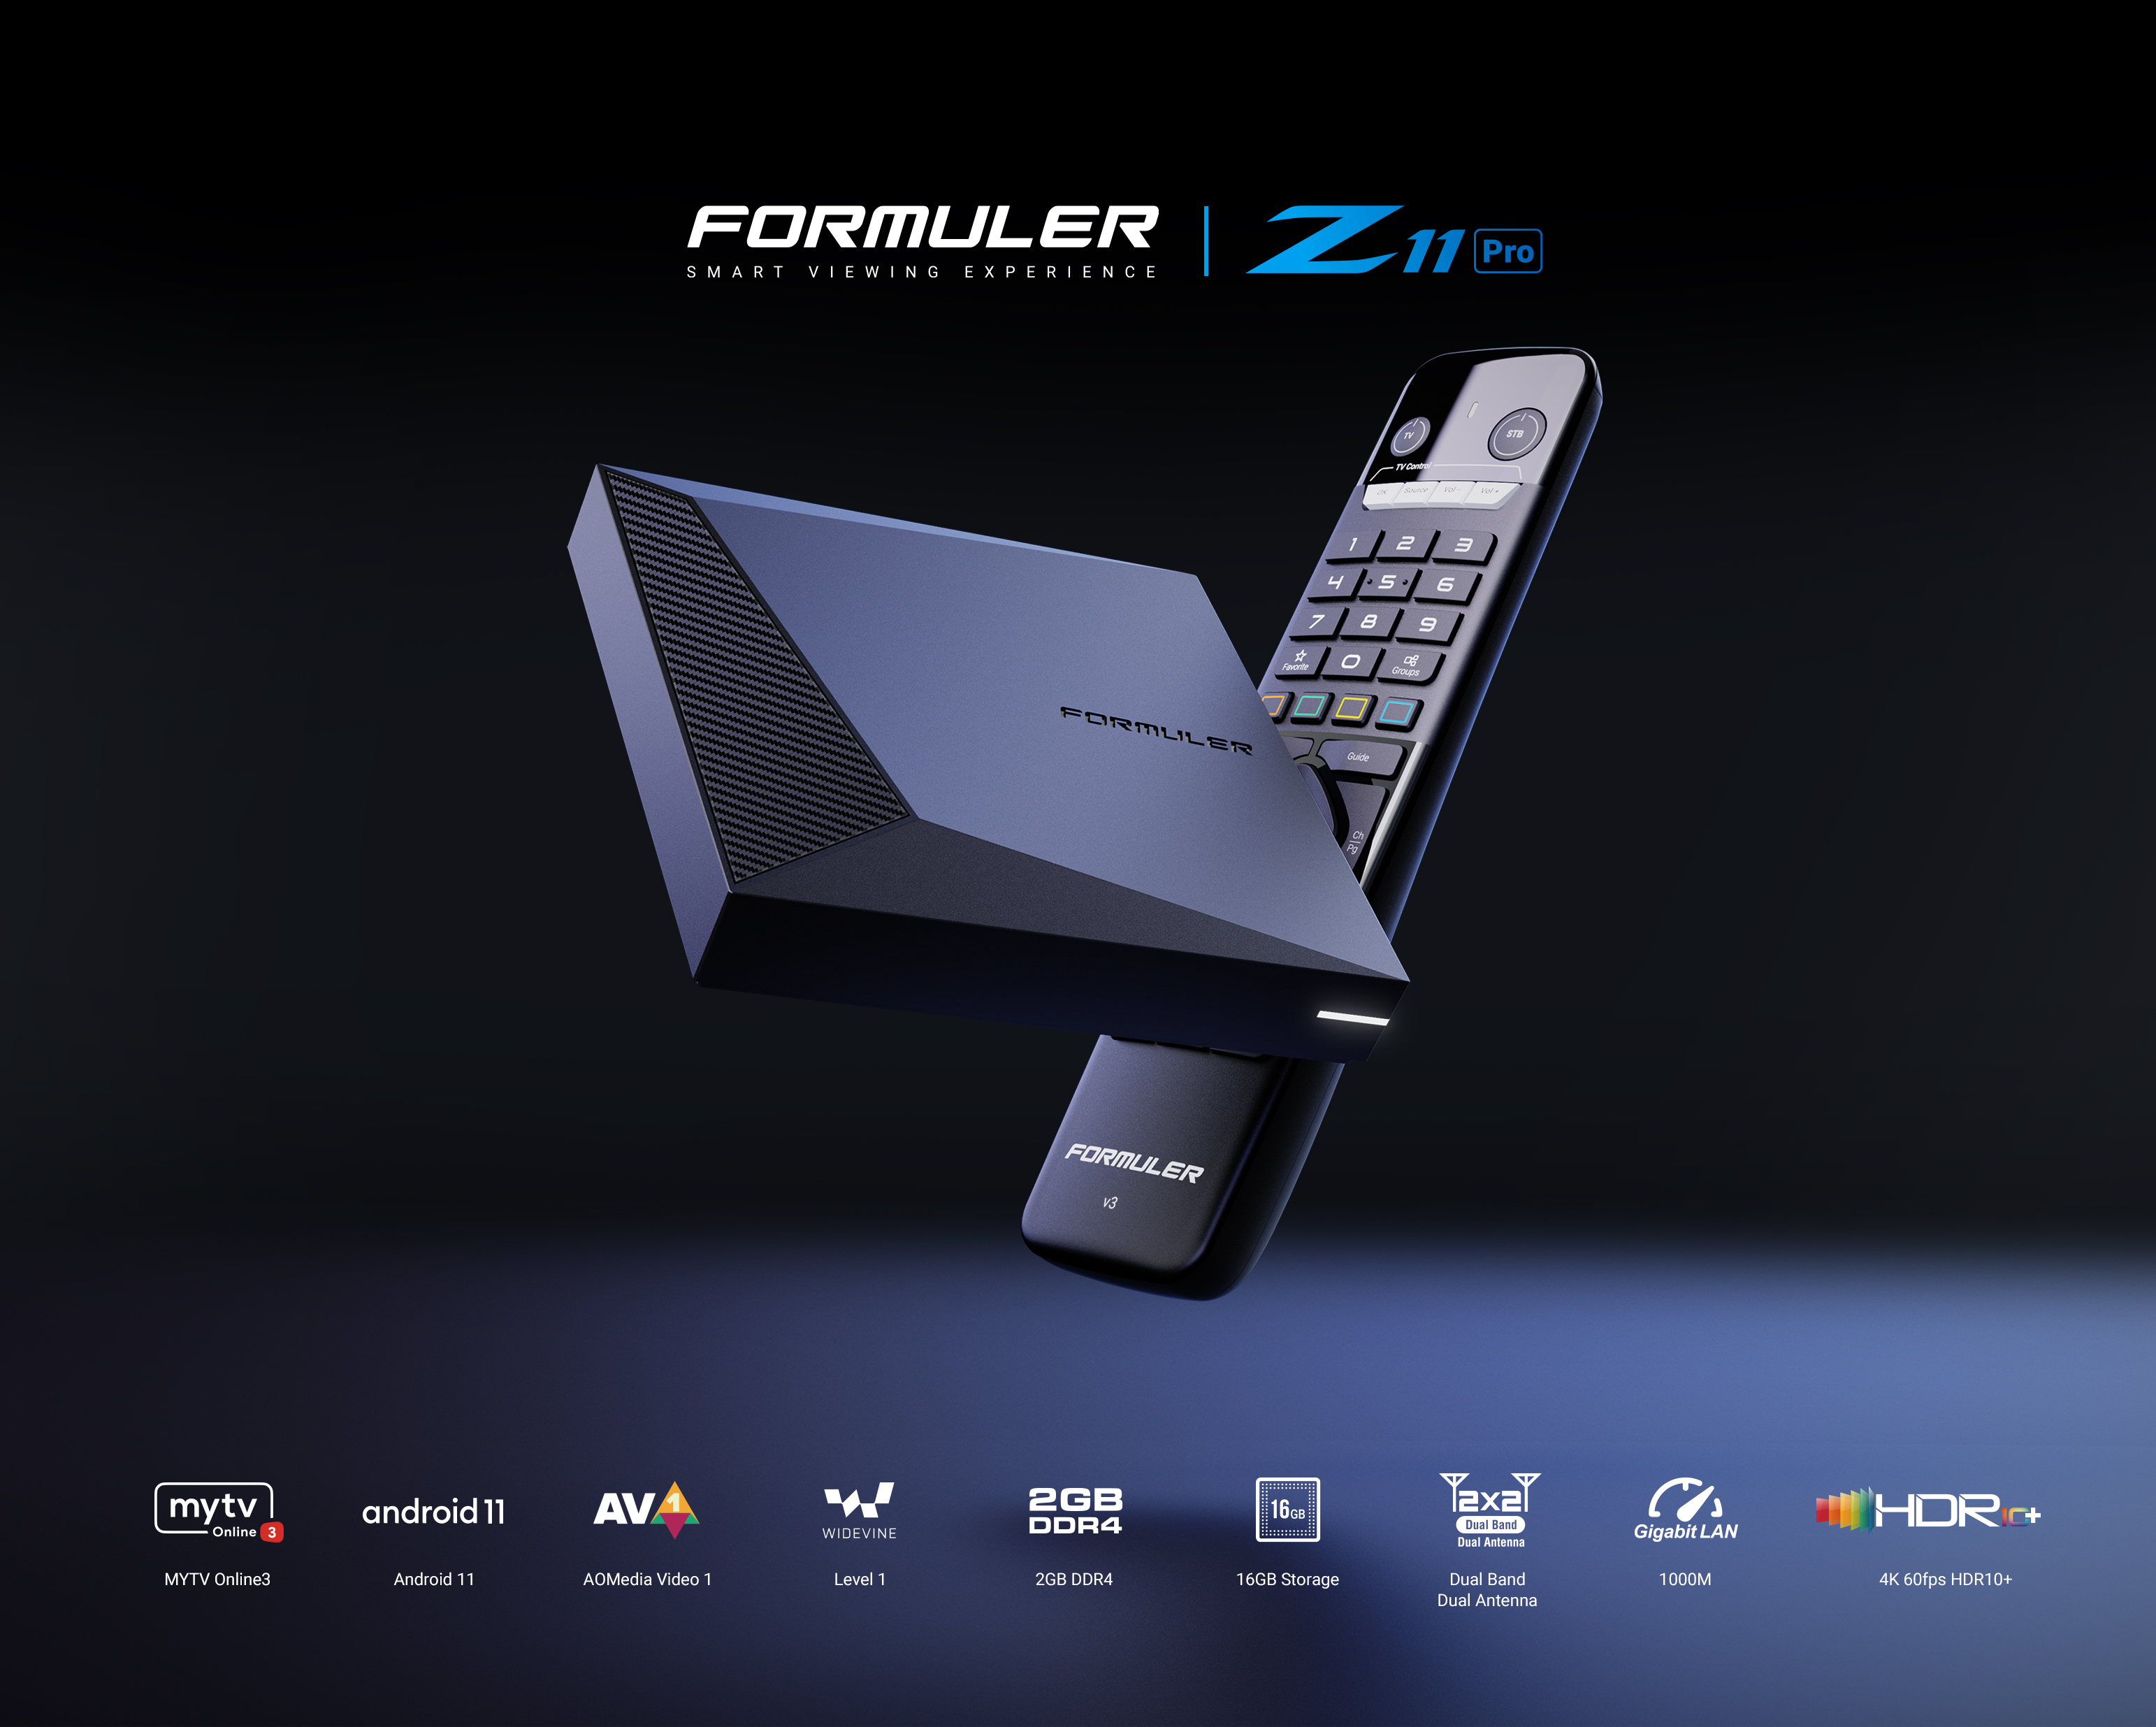 Compra Tv Box Formuler Z11 Pro MAX BT1 Edition MyTvOnline3 con precios  increibles.